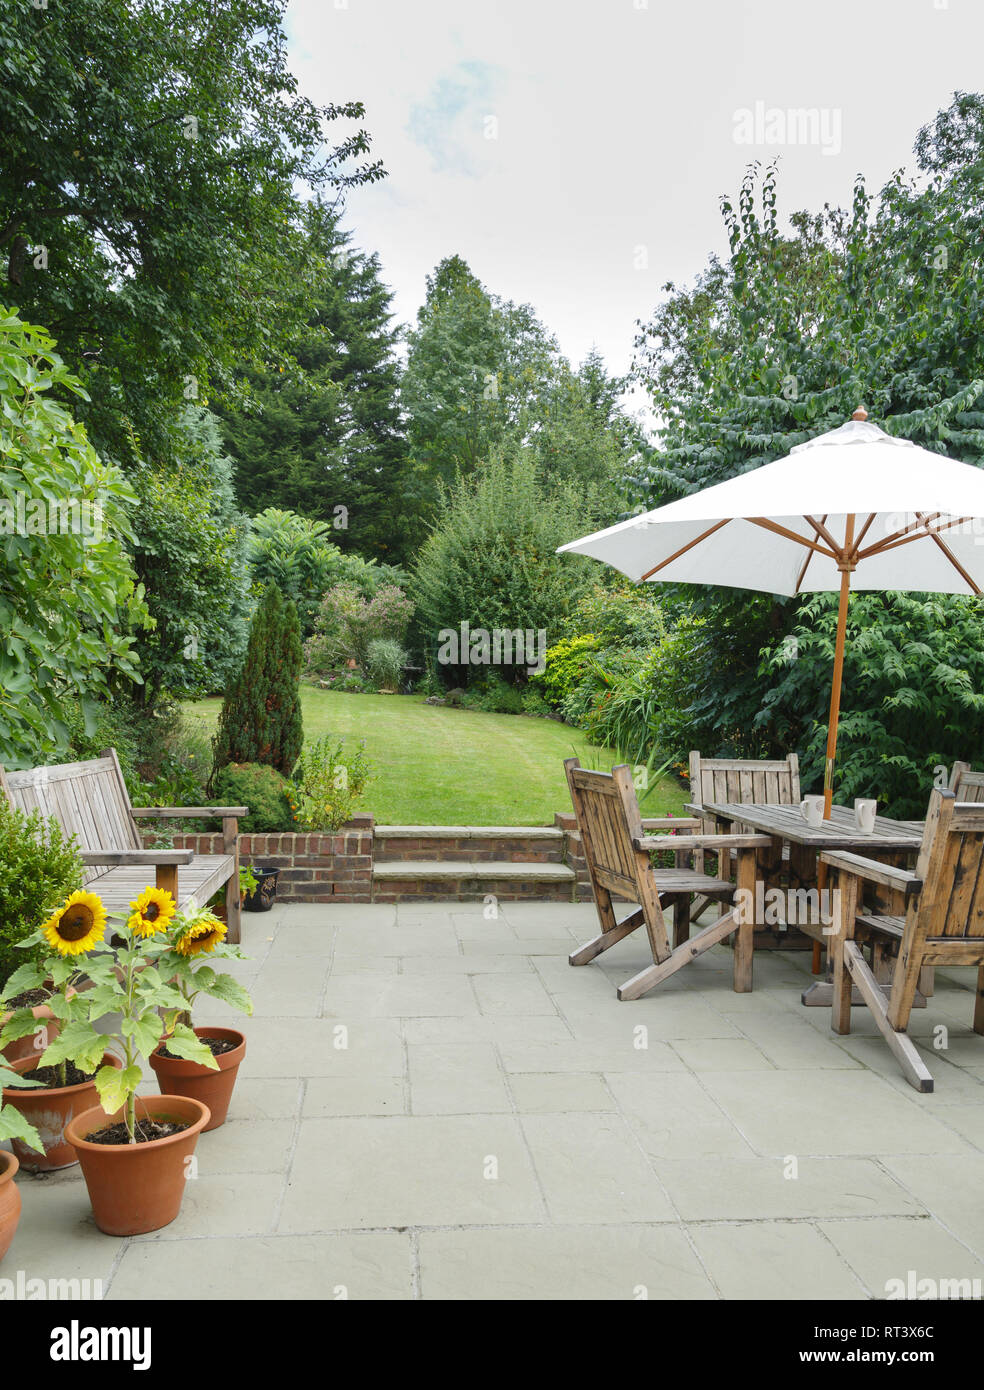 Garden in summer with patio, wooden garden furniture and a parasol or sun umbrella Stock Photo